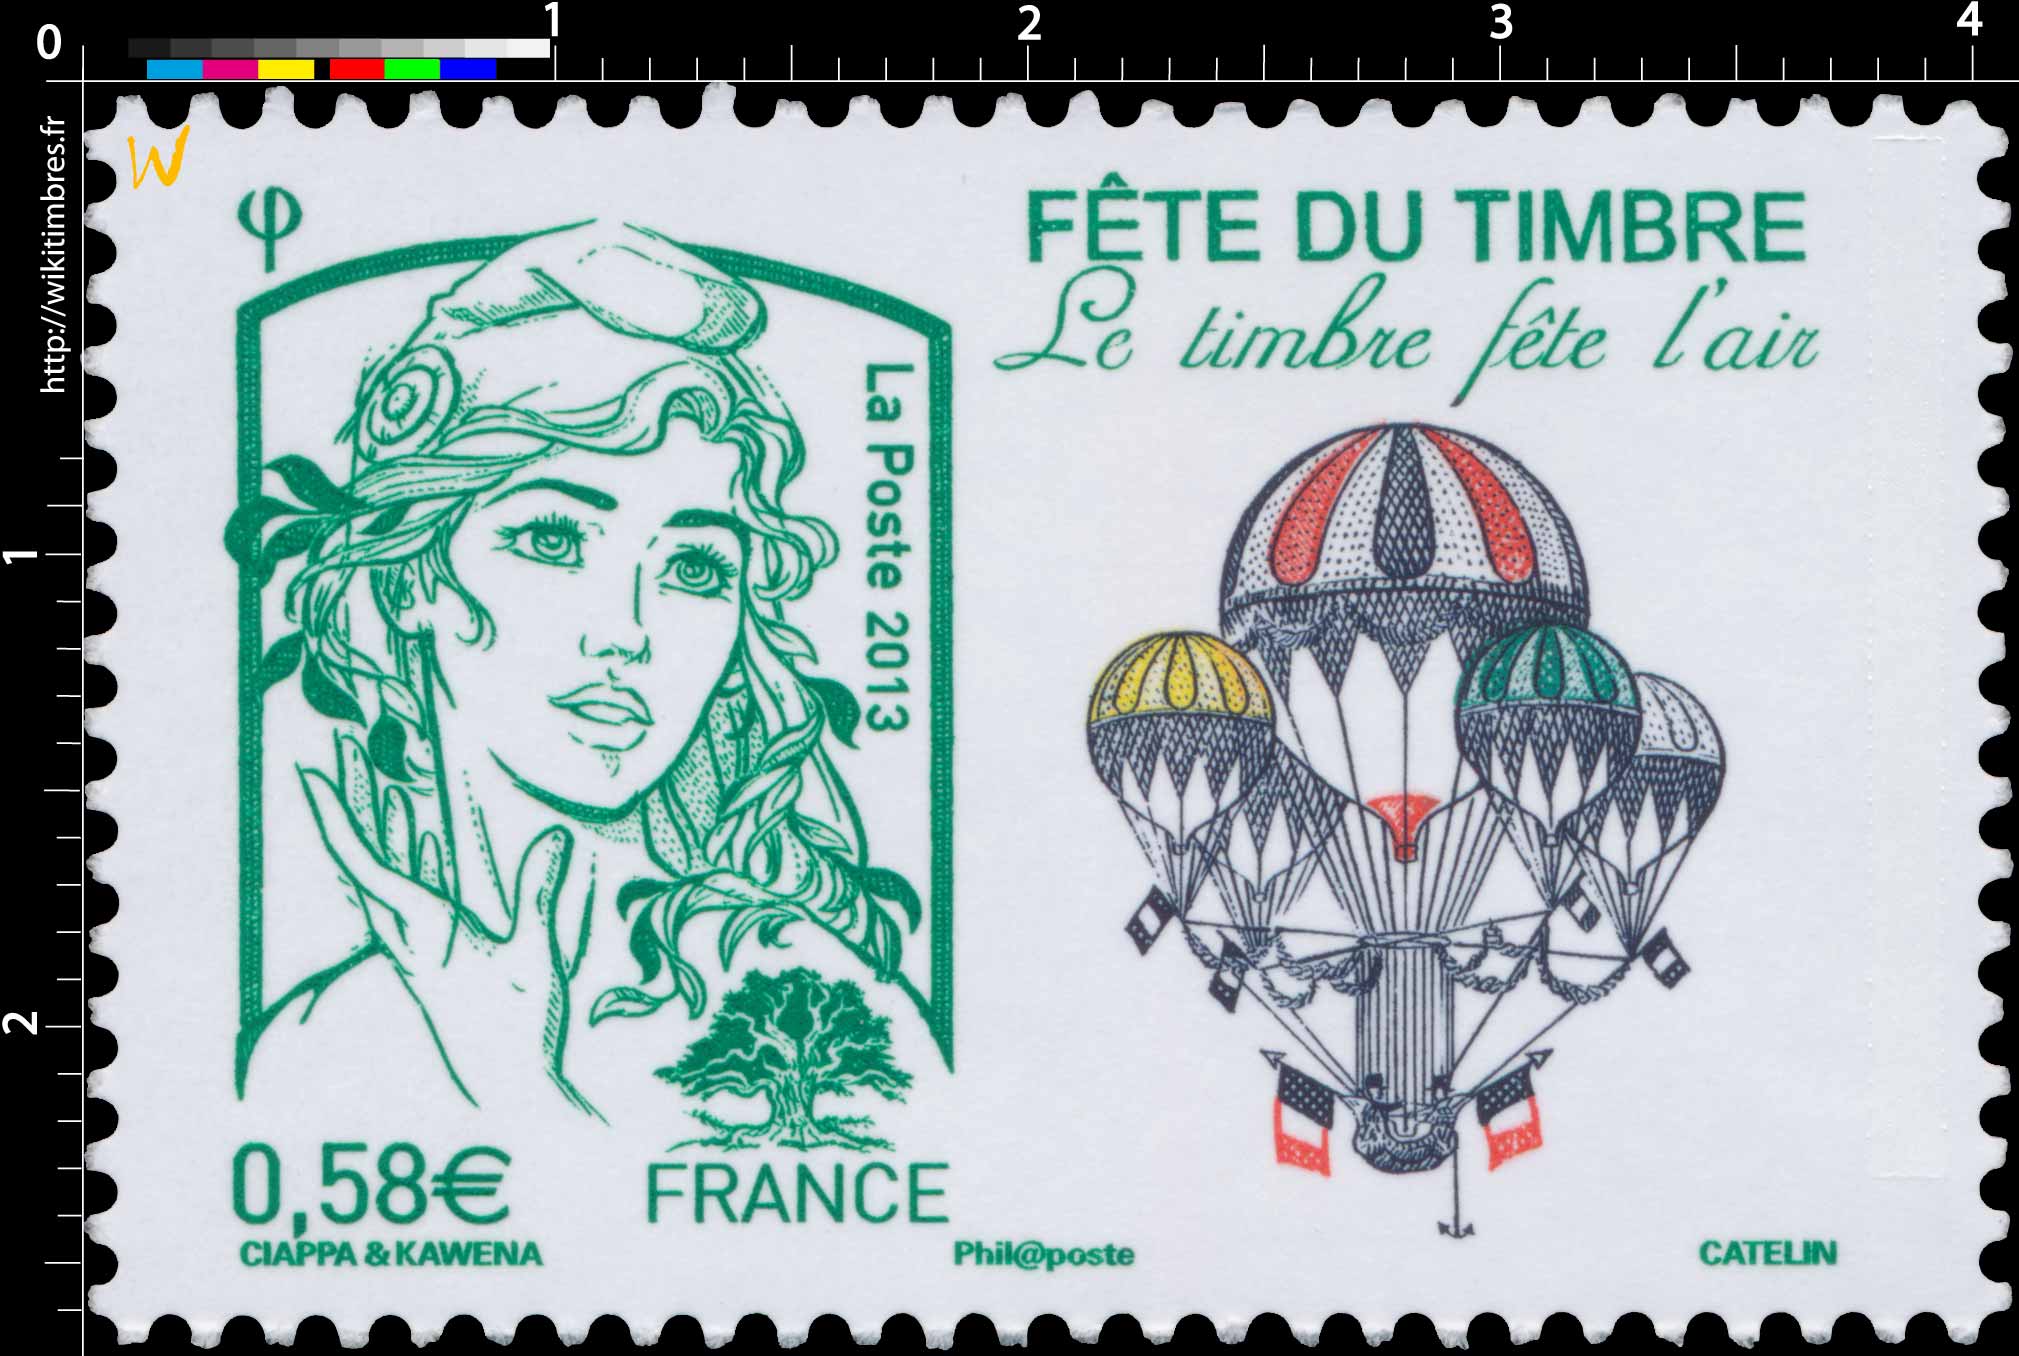 Fête du timbre Le timbre fête l'air